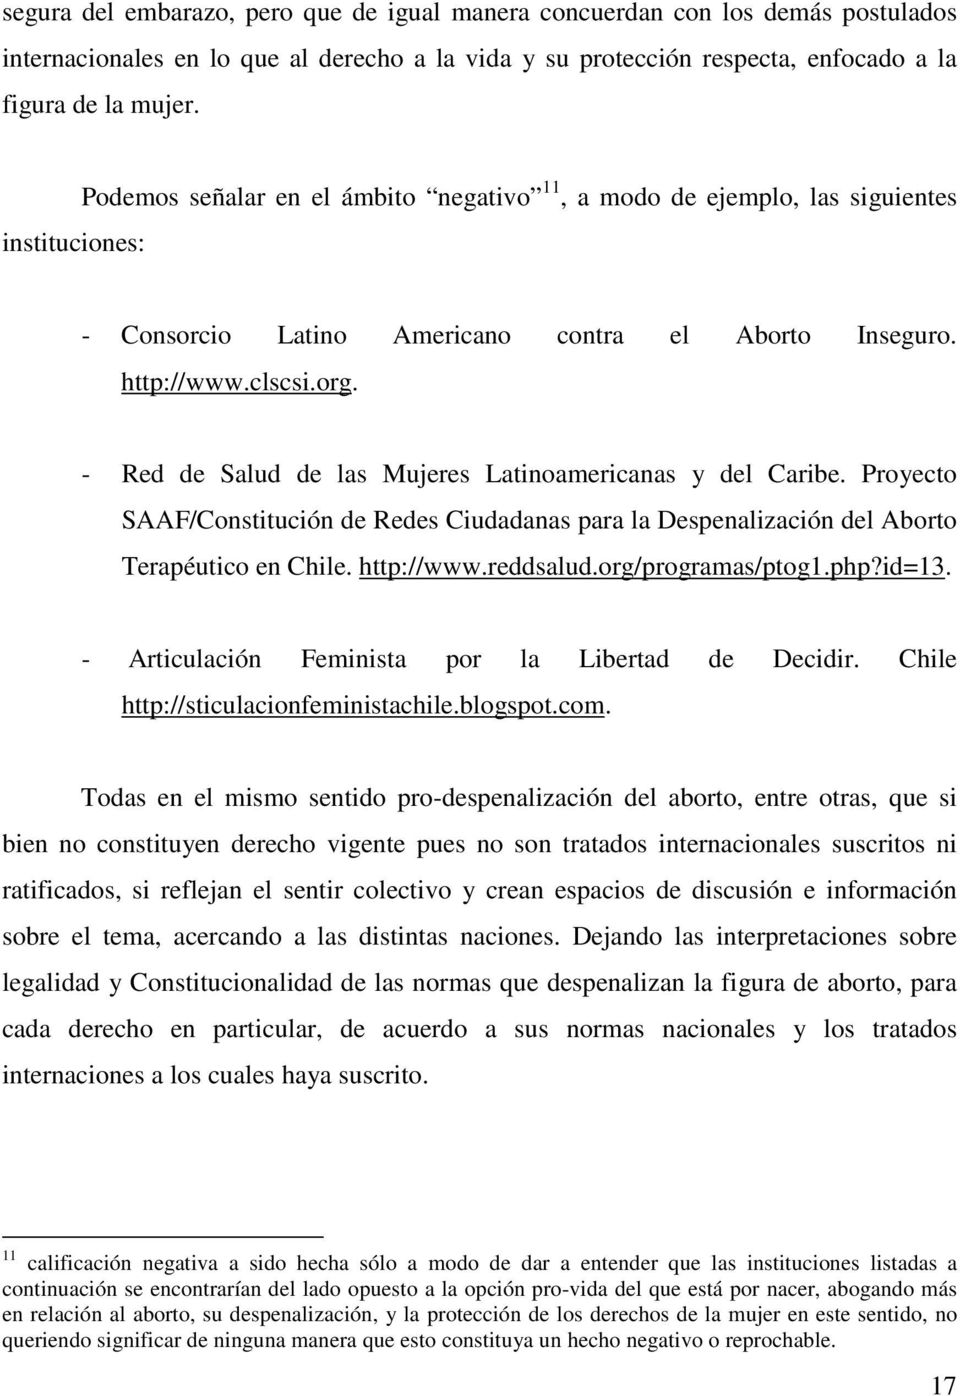 - Red de Salud de las Mujeres Latinoamericanas y del Caribe. Proyecto SAAF/Constitución de Redes Ciudadanas para la Despenalización del Aborto Terapéutico en Chile. http://www.reddsalud.